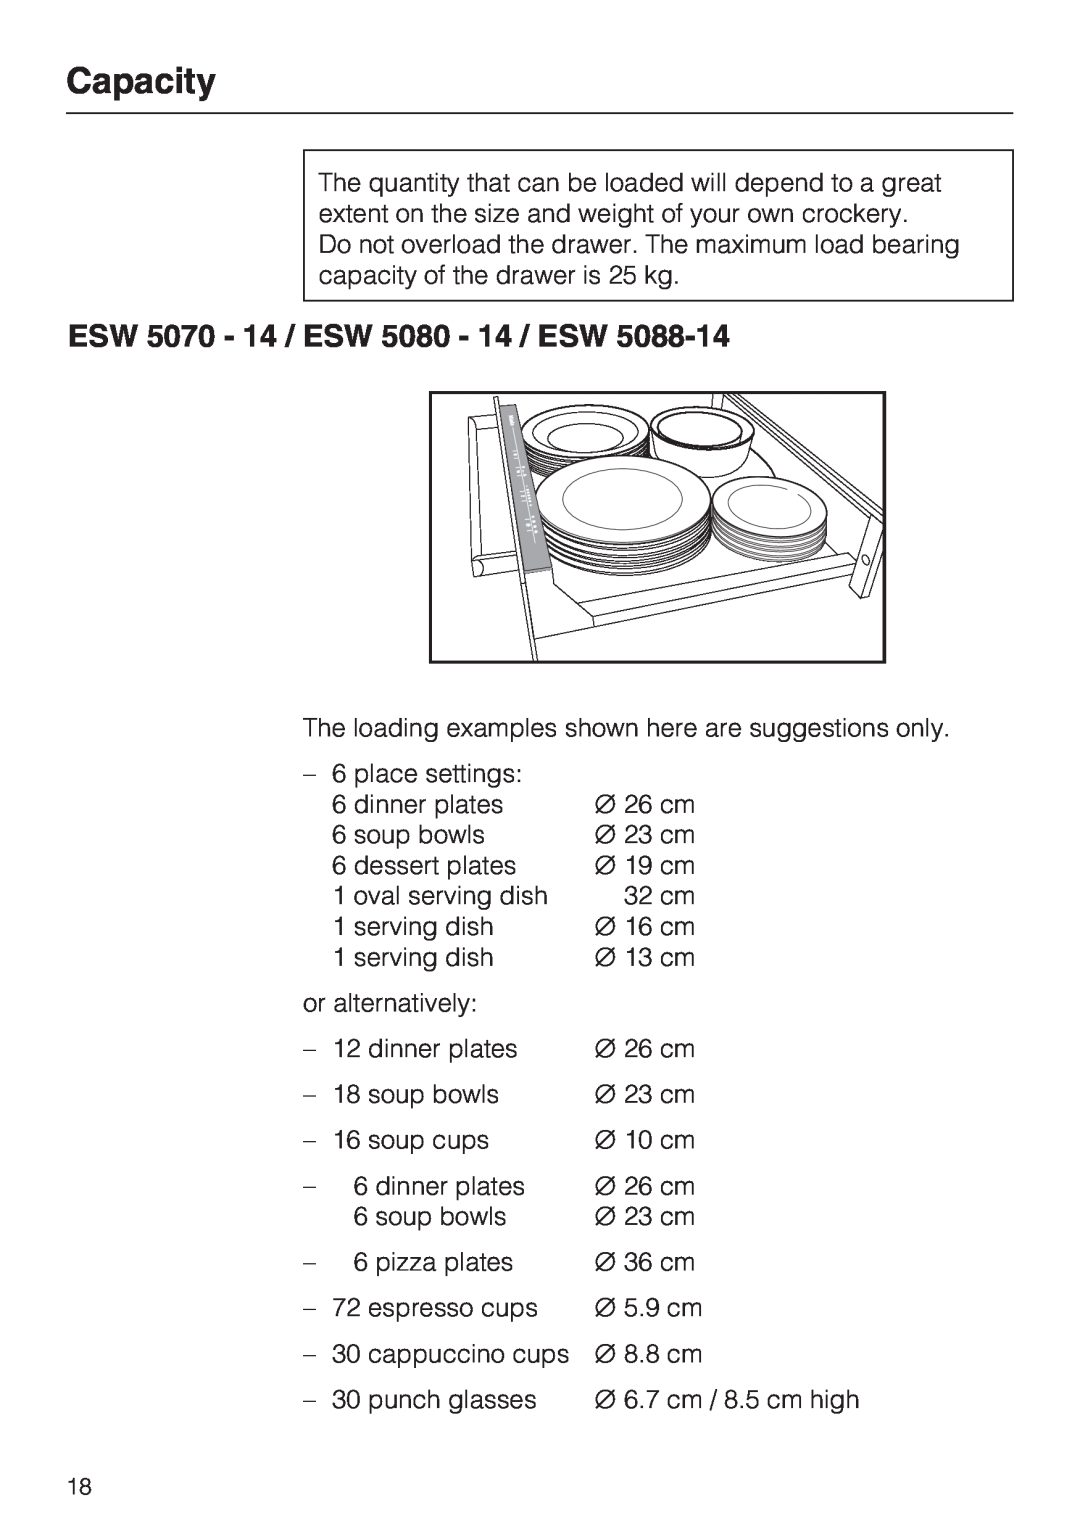 Miele ESW 50X0-14, ESW 5088-14, ESW 50X0-29 installation instructions Capacity, ESW 5070 - 14 / ESW 5080 - 14 / ESW 